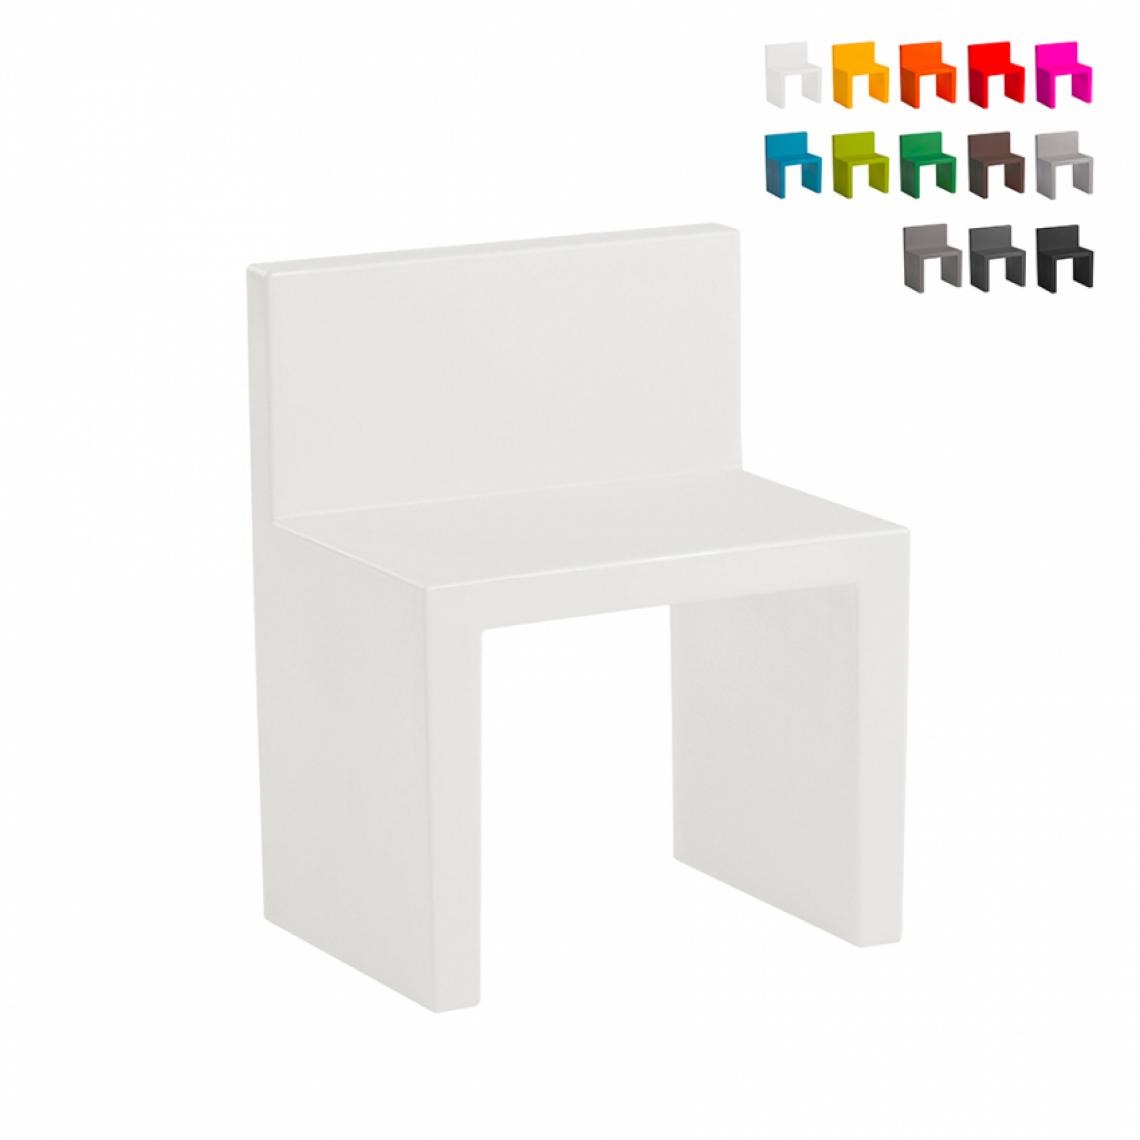 Slide - Chaise au design moderne Slide Angolo Retto pour la maison et le jardin, Couleur: Blanc - Chaises